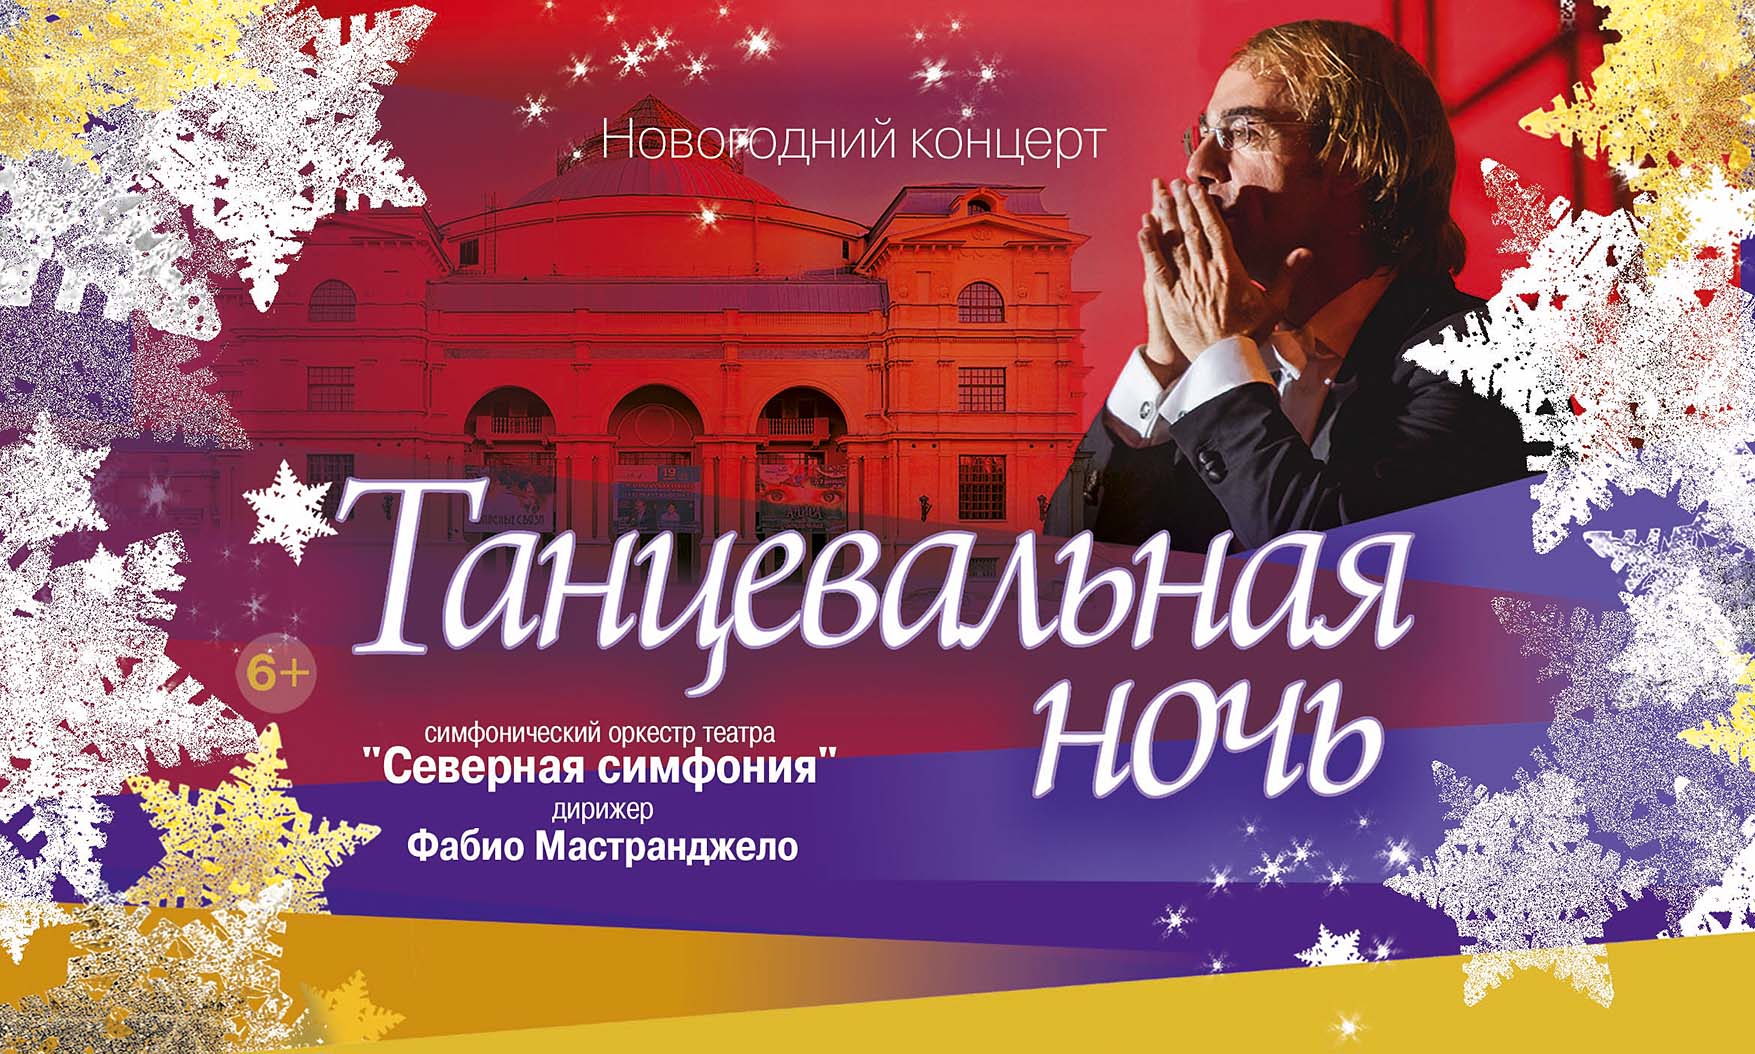 Прямая трансляция новогоднего концерта "Танцевальная ночь"